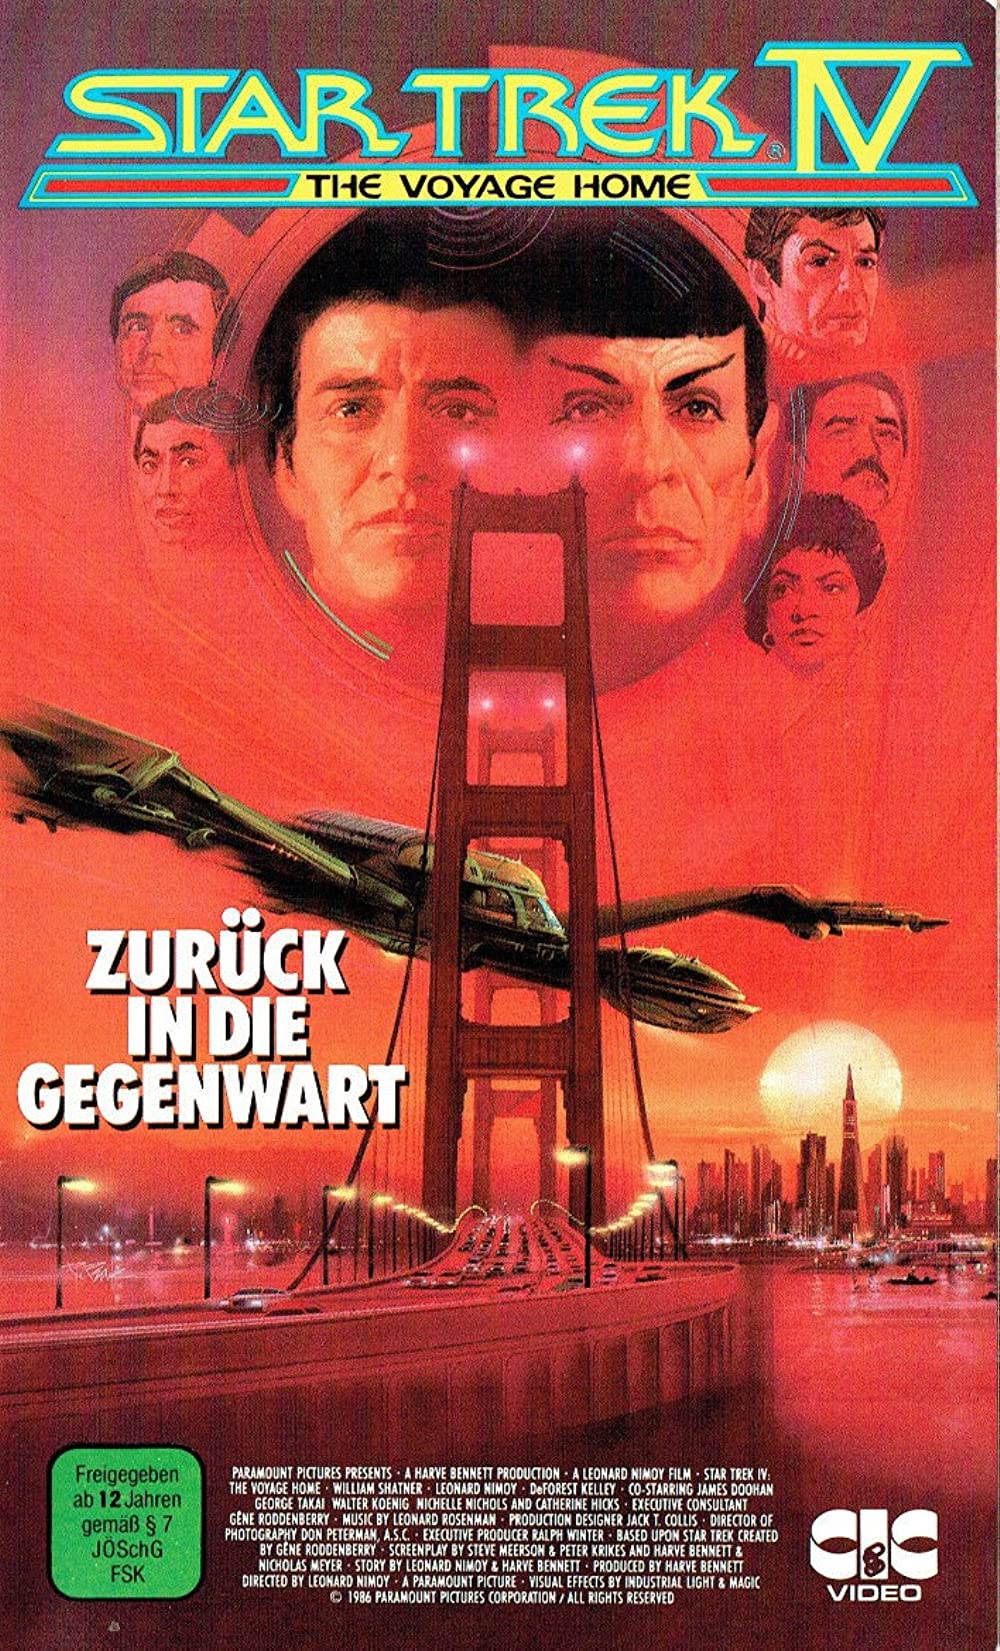 Filmbeschreibung zu Star Trek IV - Zurück in die Gegenwart